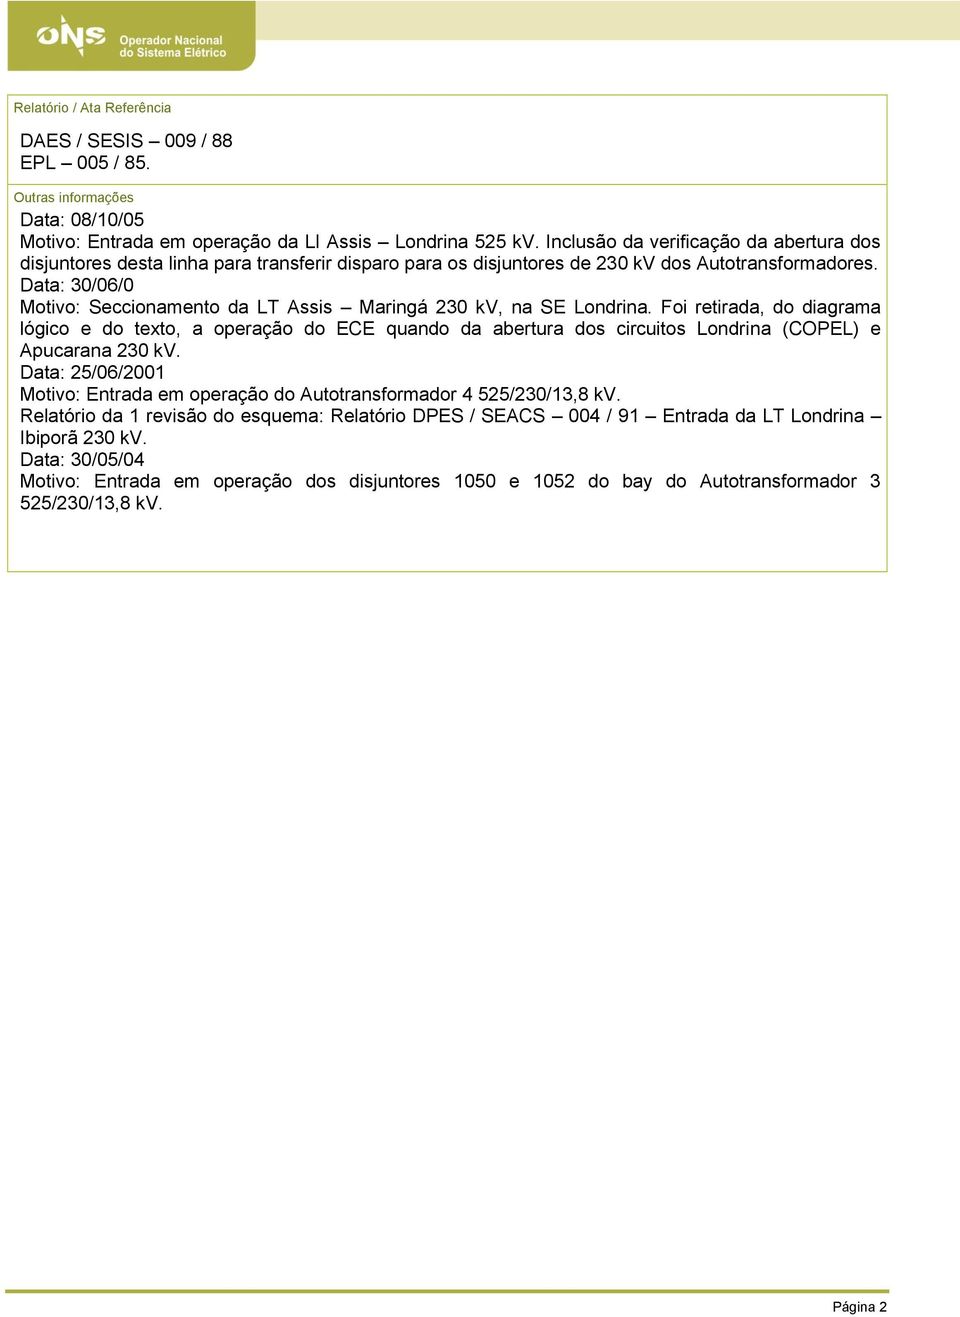 Data: 30/06/0 Motivo: Seccionamento da LT Assis Maringá 230 kv, na SE Londrina.